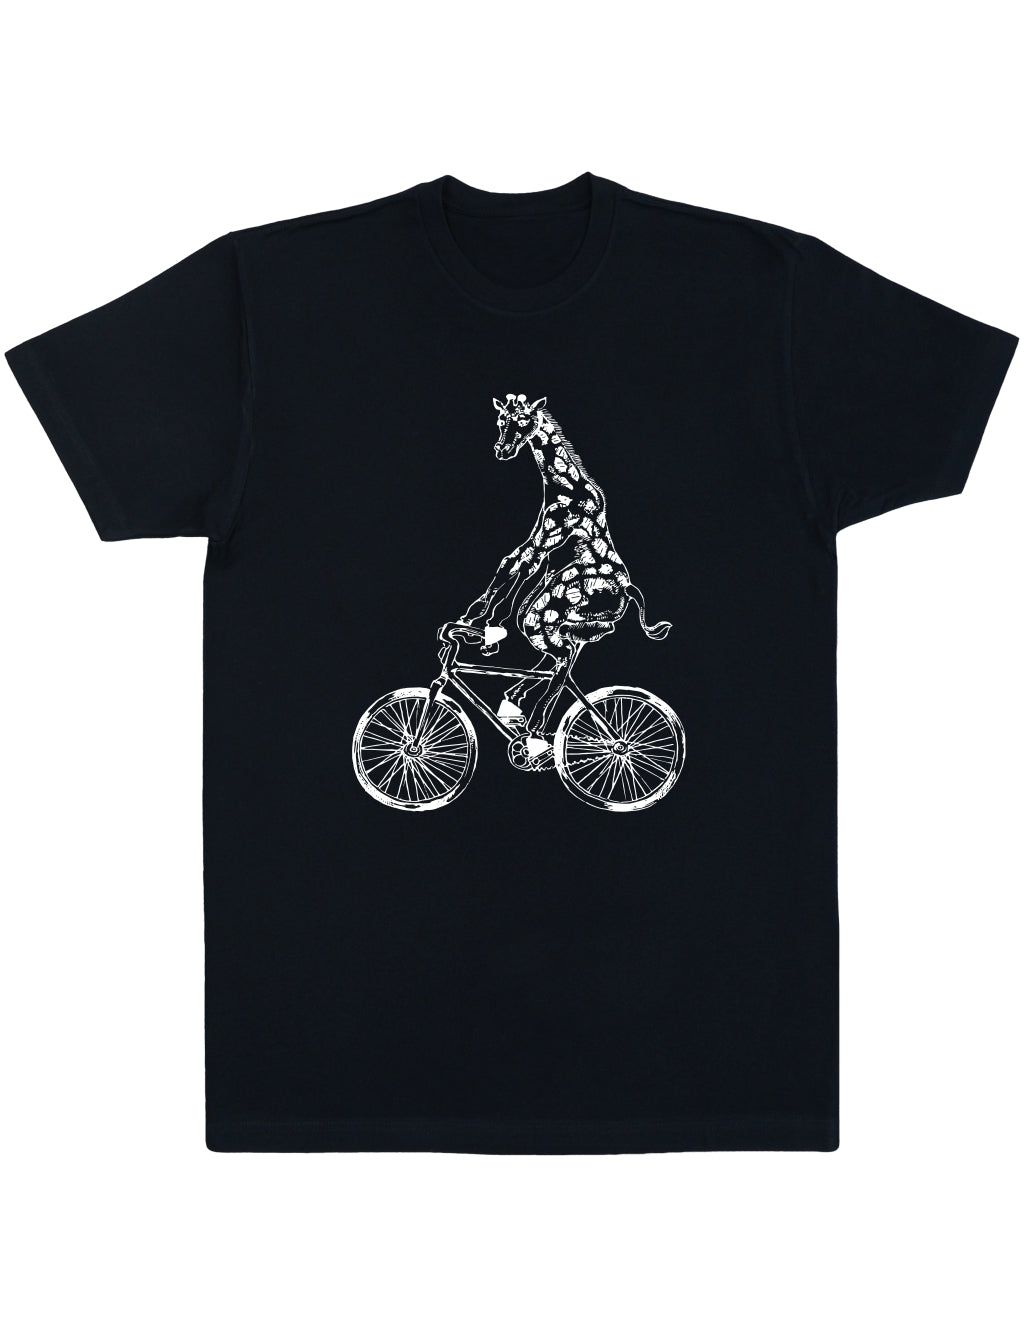 SEEMBO Giraffe Cycling Bicycle Men’s Cotton T-Shirt